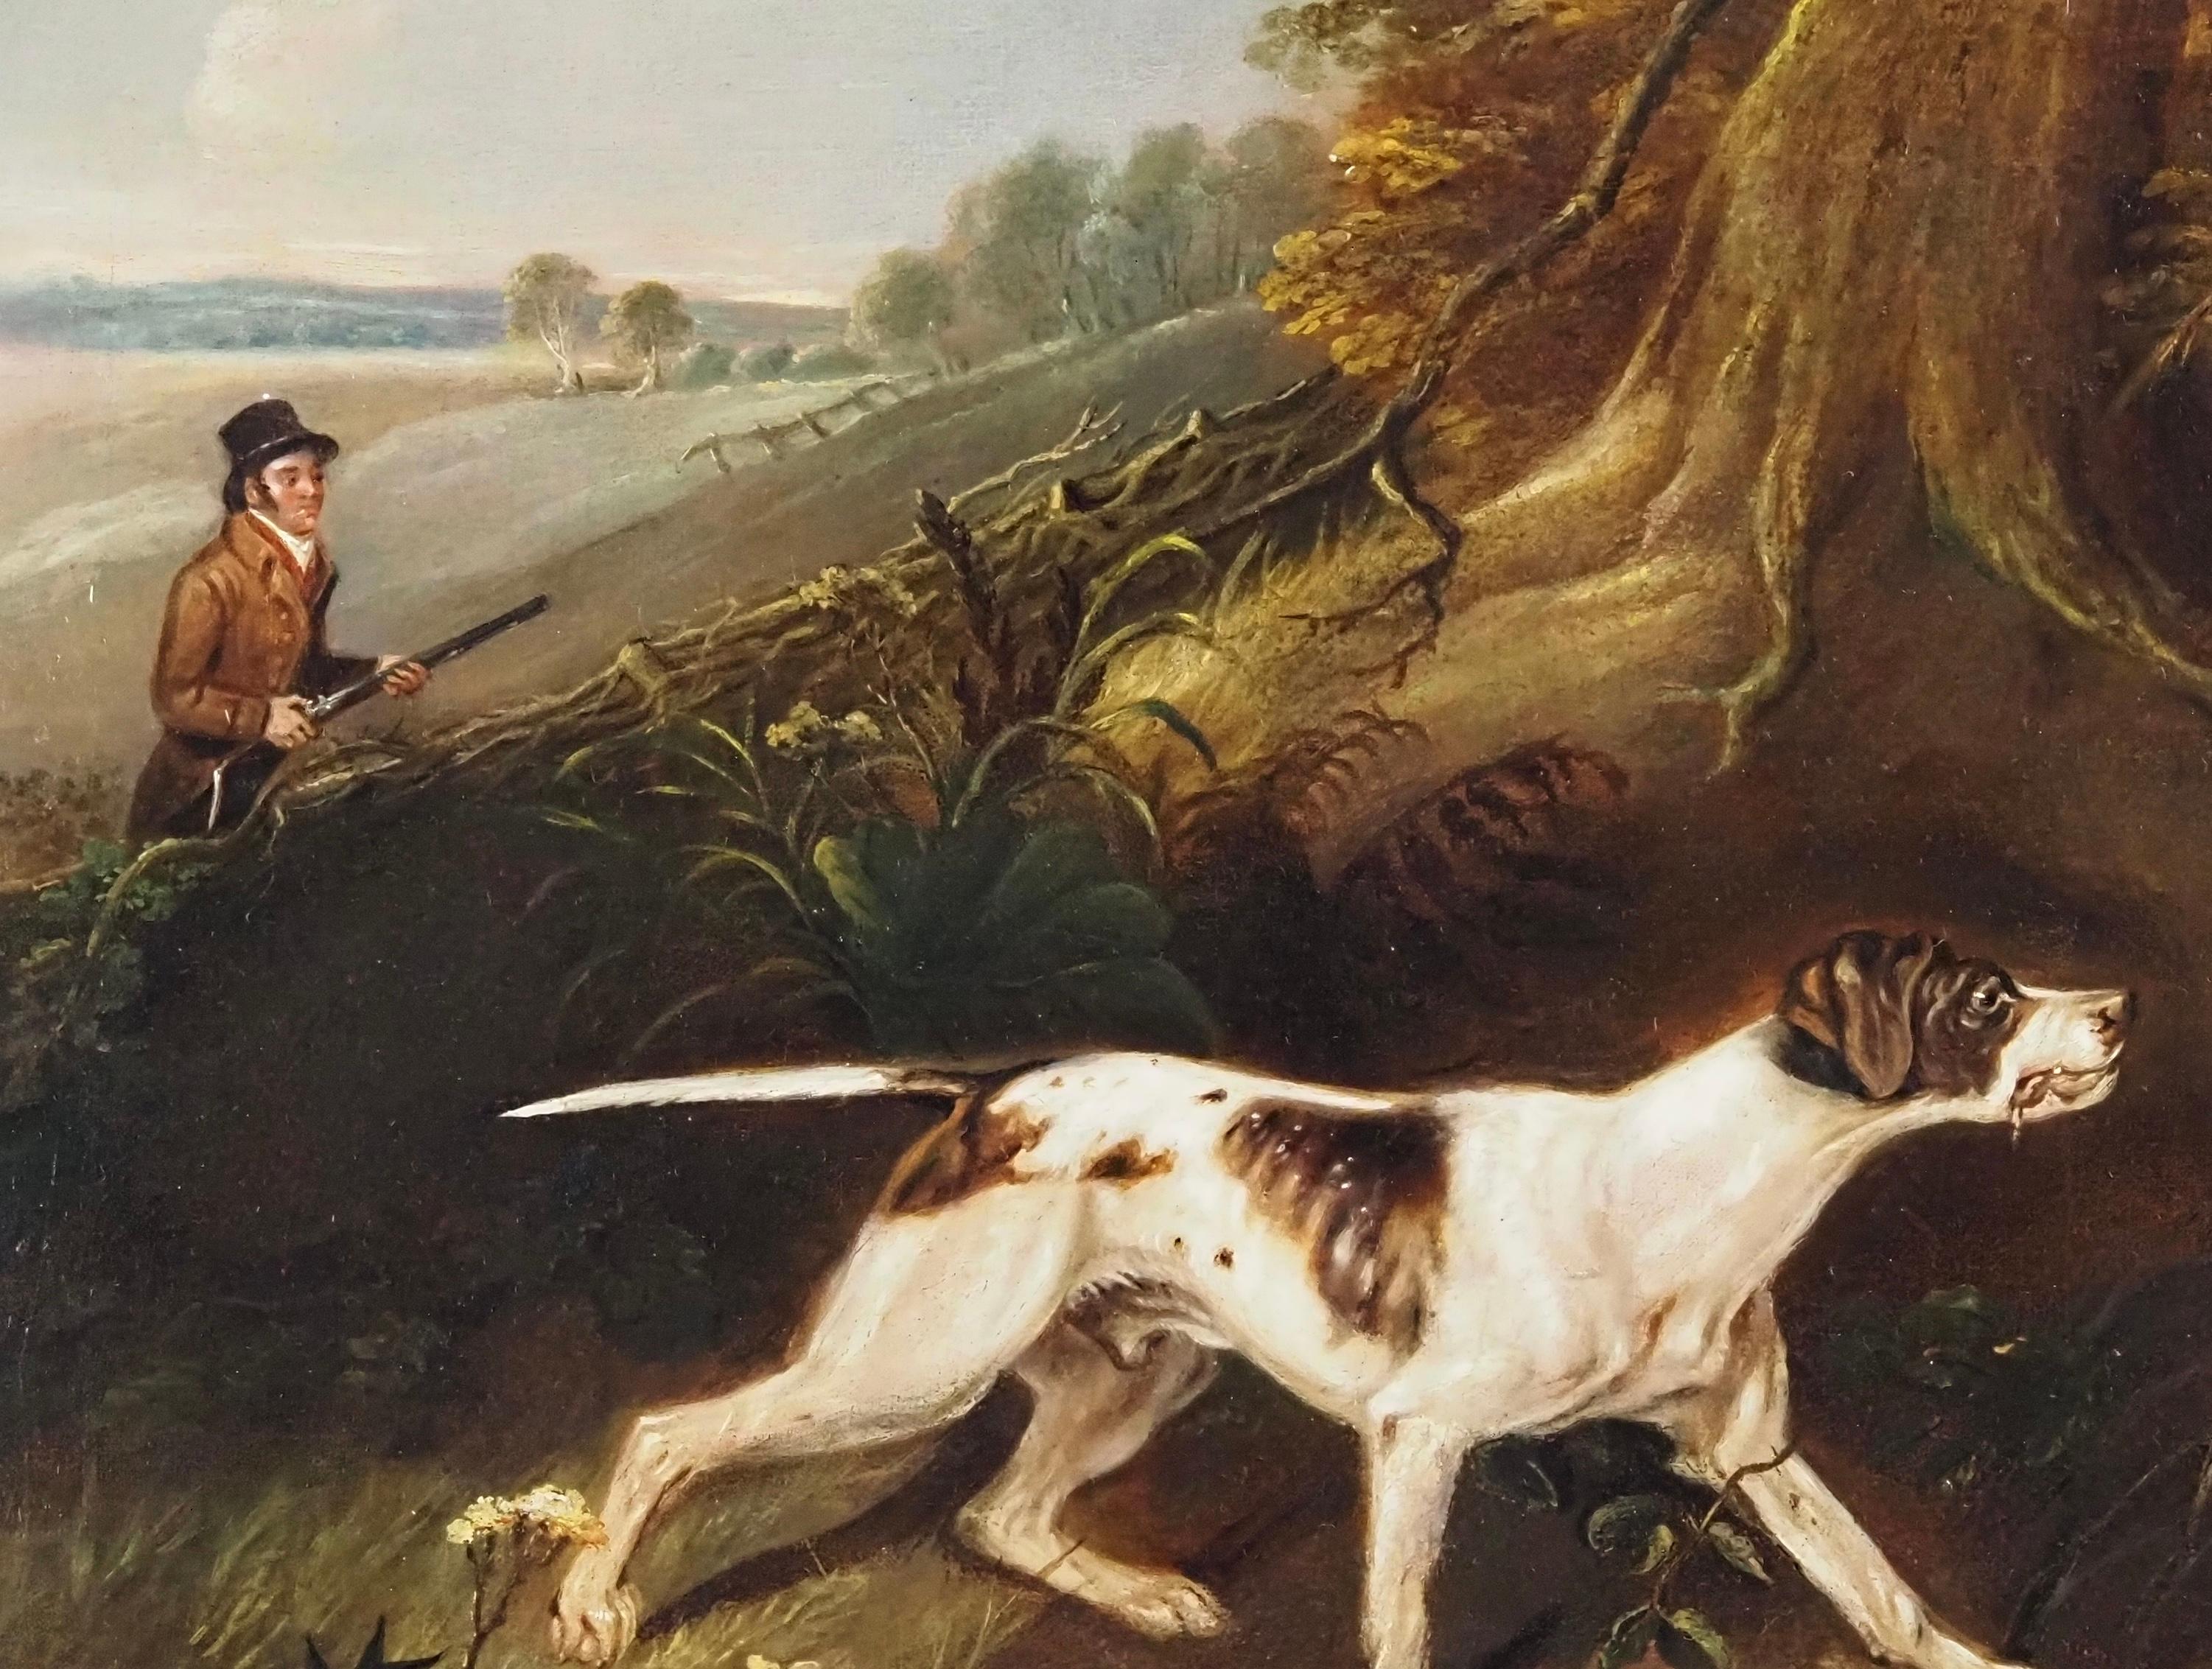 Philips Reinagle (1749-1833)
Ein Jäger mit Spieß in einer Landschaft
Öl auf Leinwand
Leinwandgröße - 17 x 23 Zoll
Gerahmte Größe - 22 x 28 Zoll

Philip Reinagle RA (1749-1833) war ein englischer Maler von Tieren, Landschaften und botanischen Szenen.